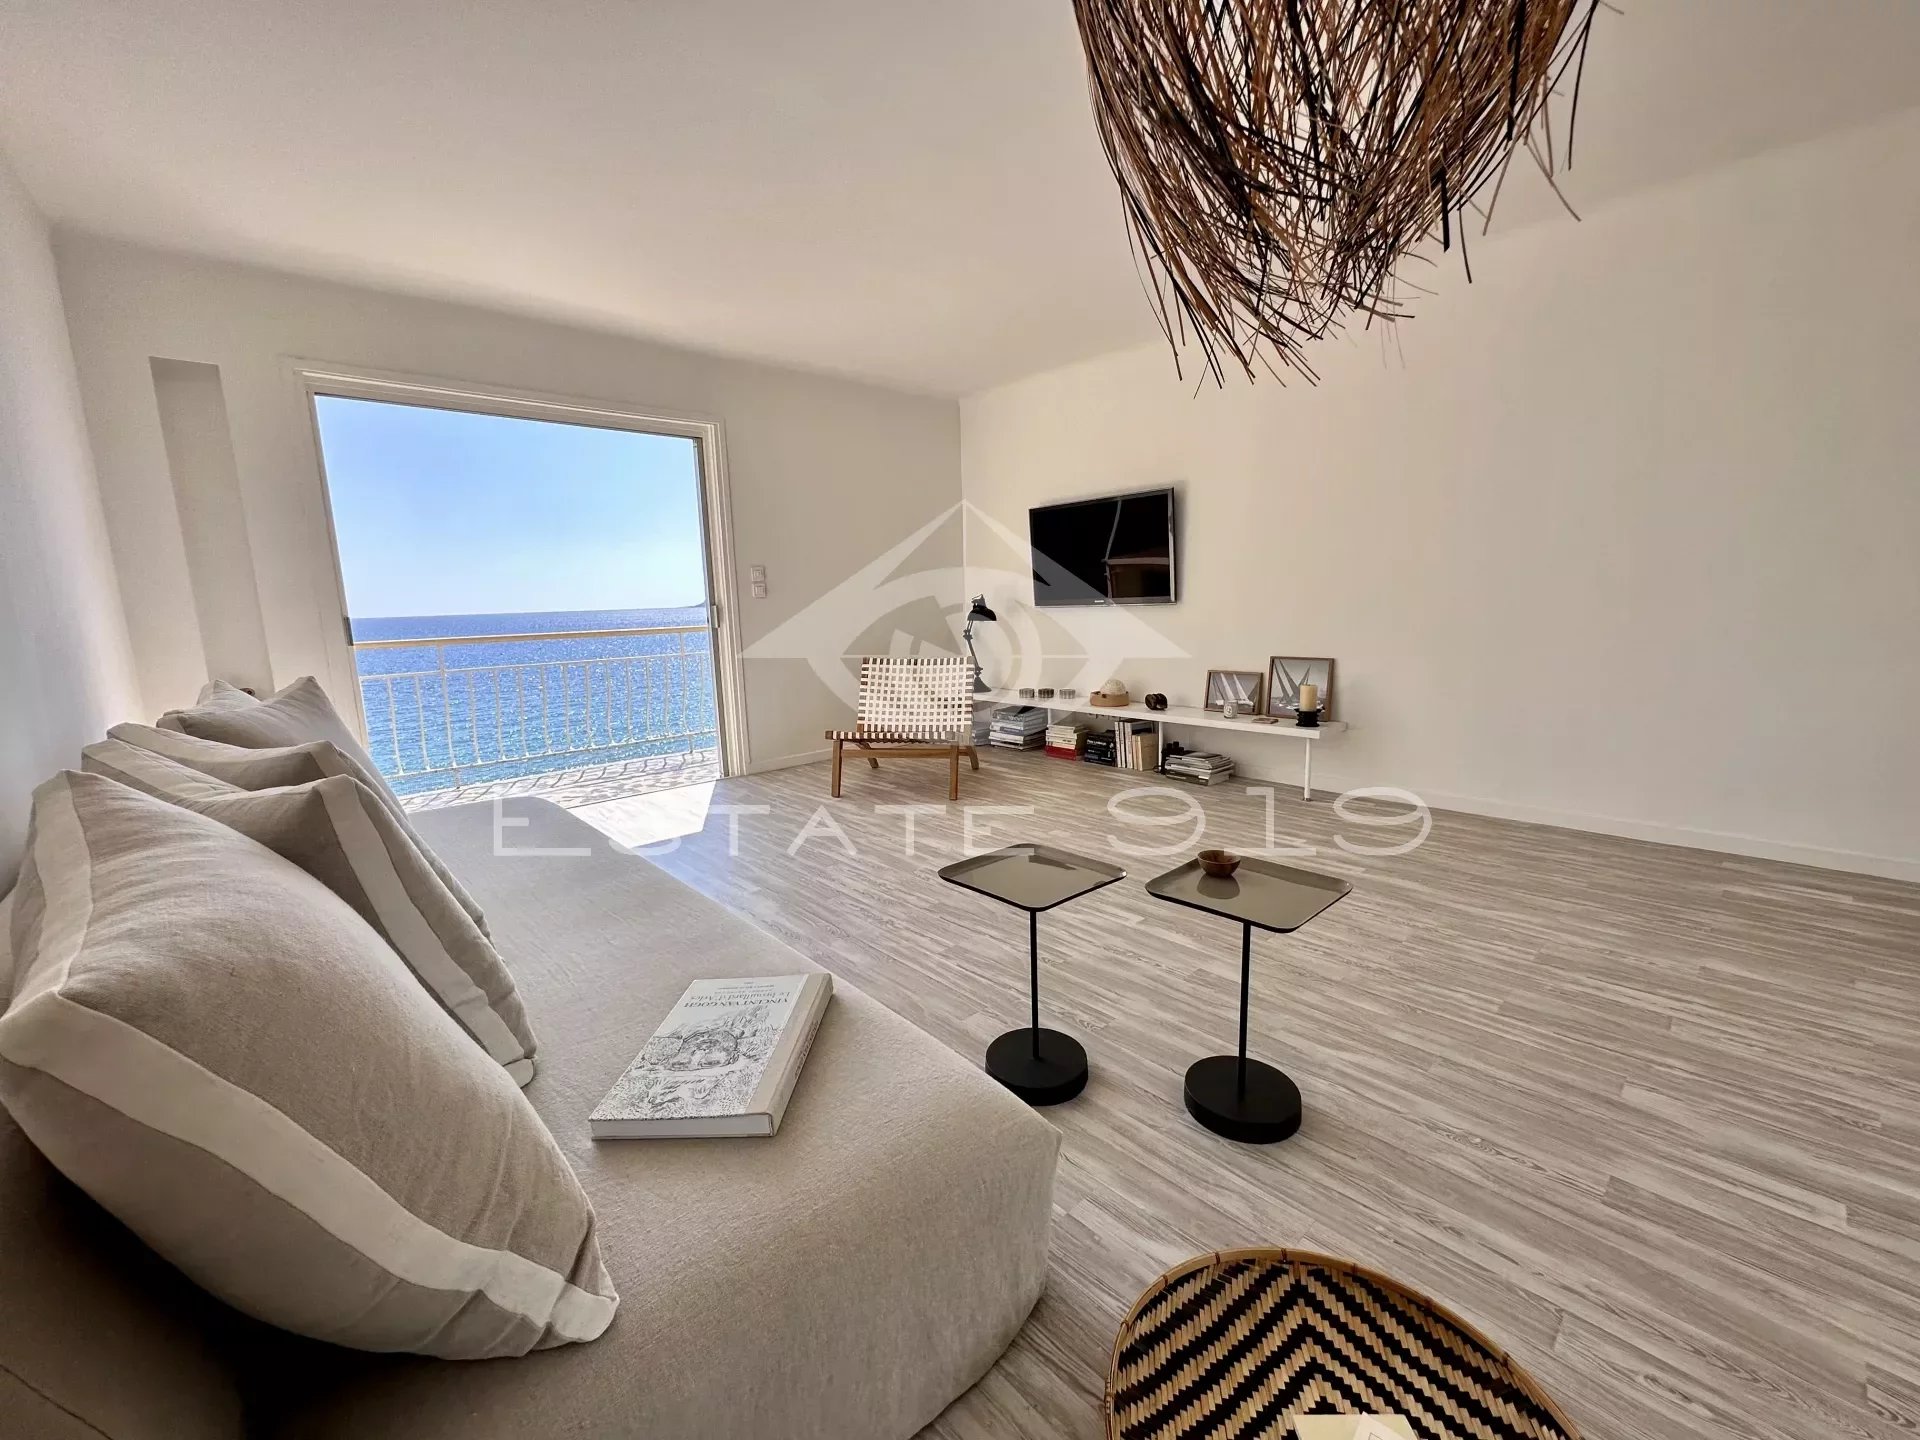 Cannes, bel appartement vue imprenable sur la mer